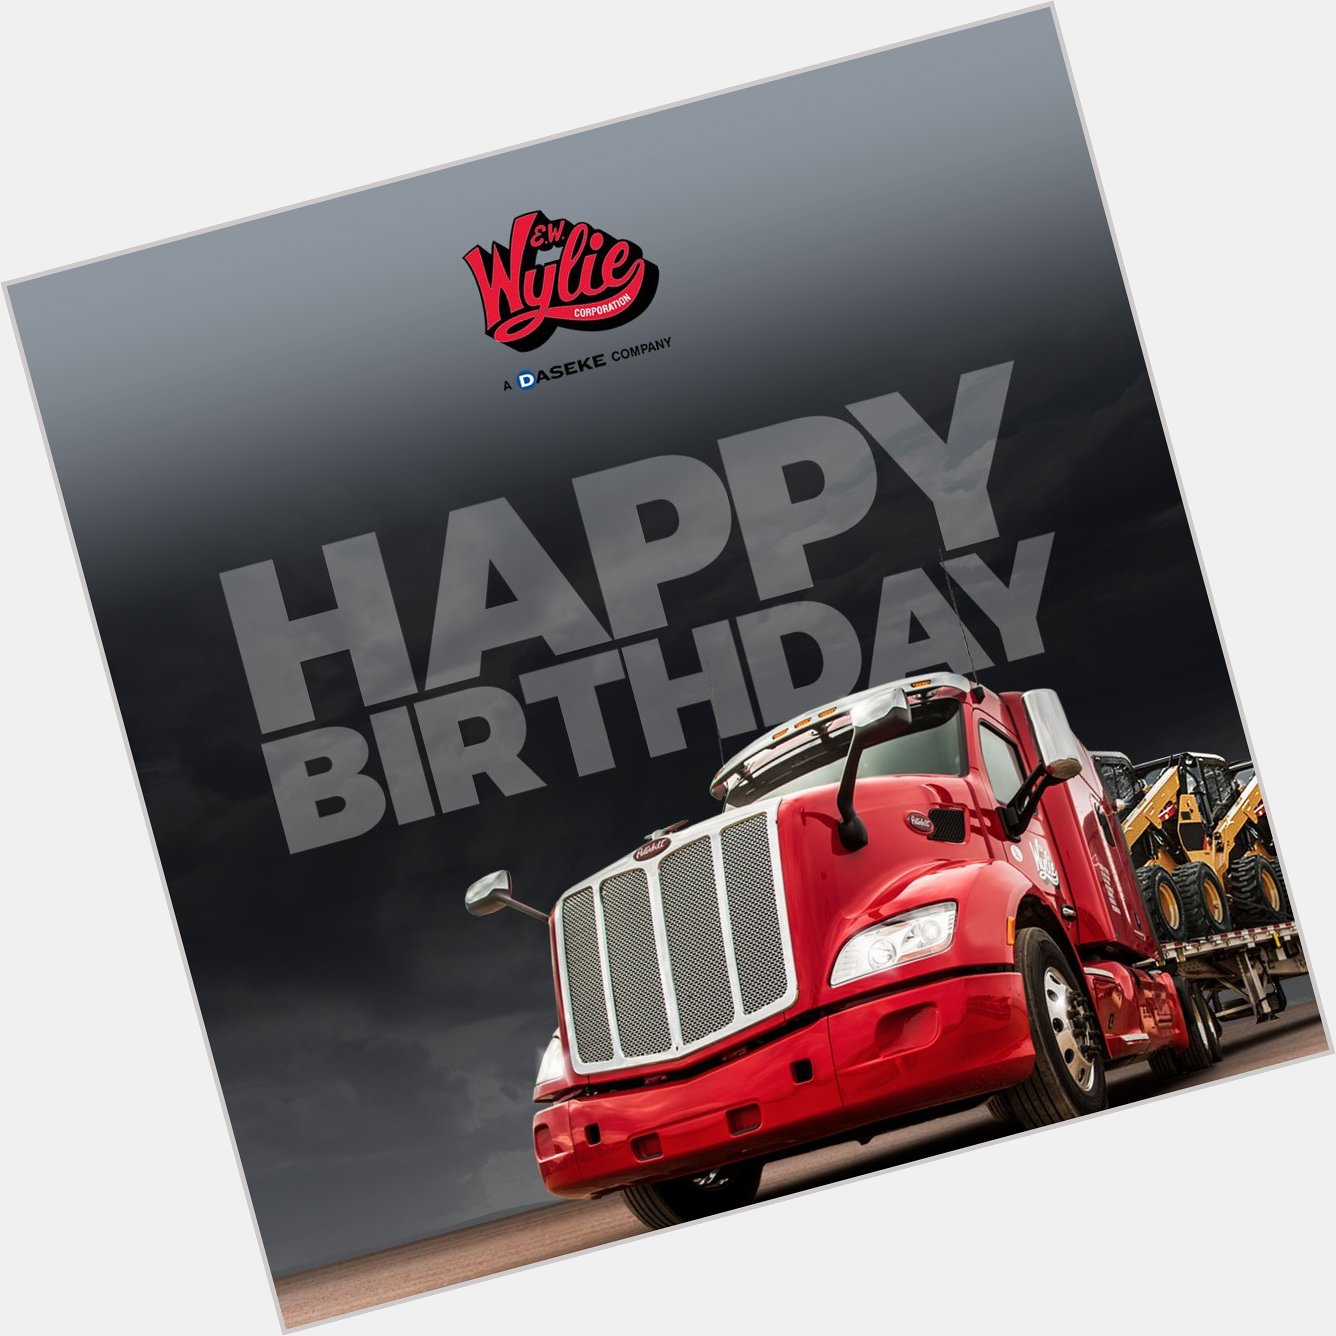 Happy Birthday this week to Wylie Tough Drivers: Gary Moore, Sr., William Walsh III, Michael Purdie & Robert Kurtz! 